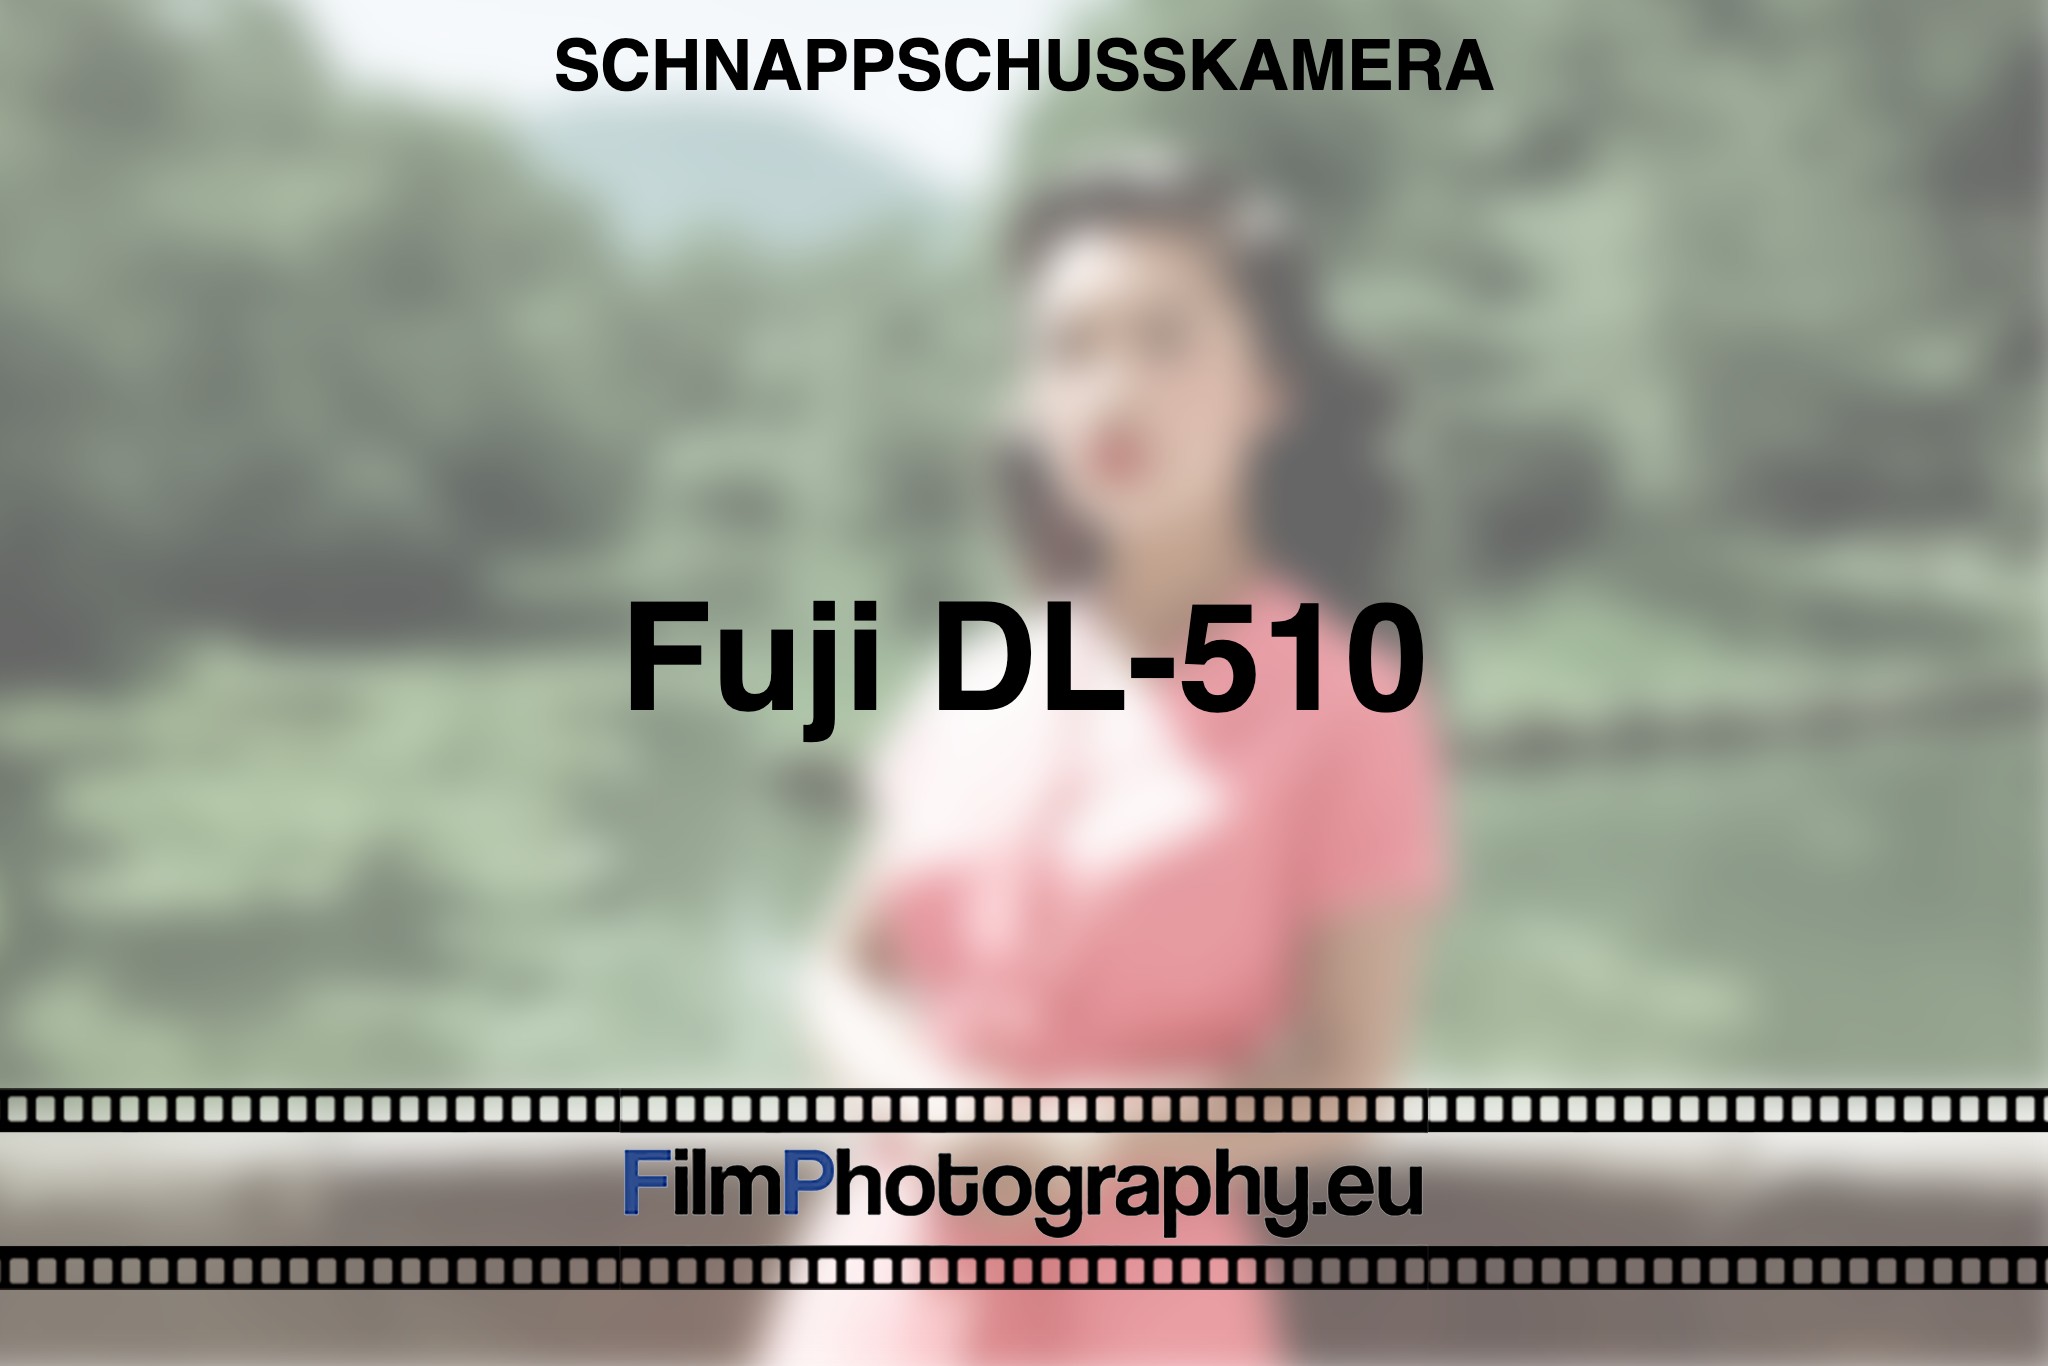 fuji-dl-510-schnappschusskamera-bnv